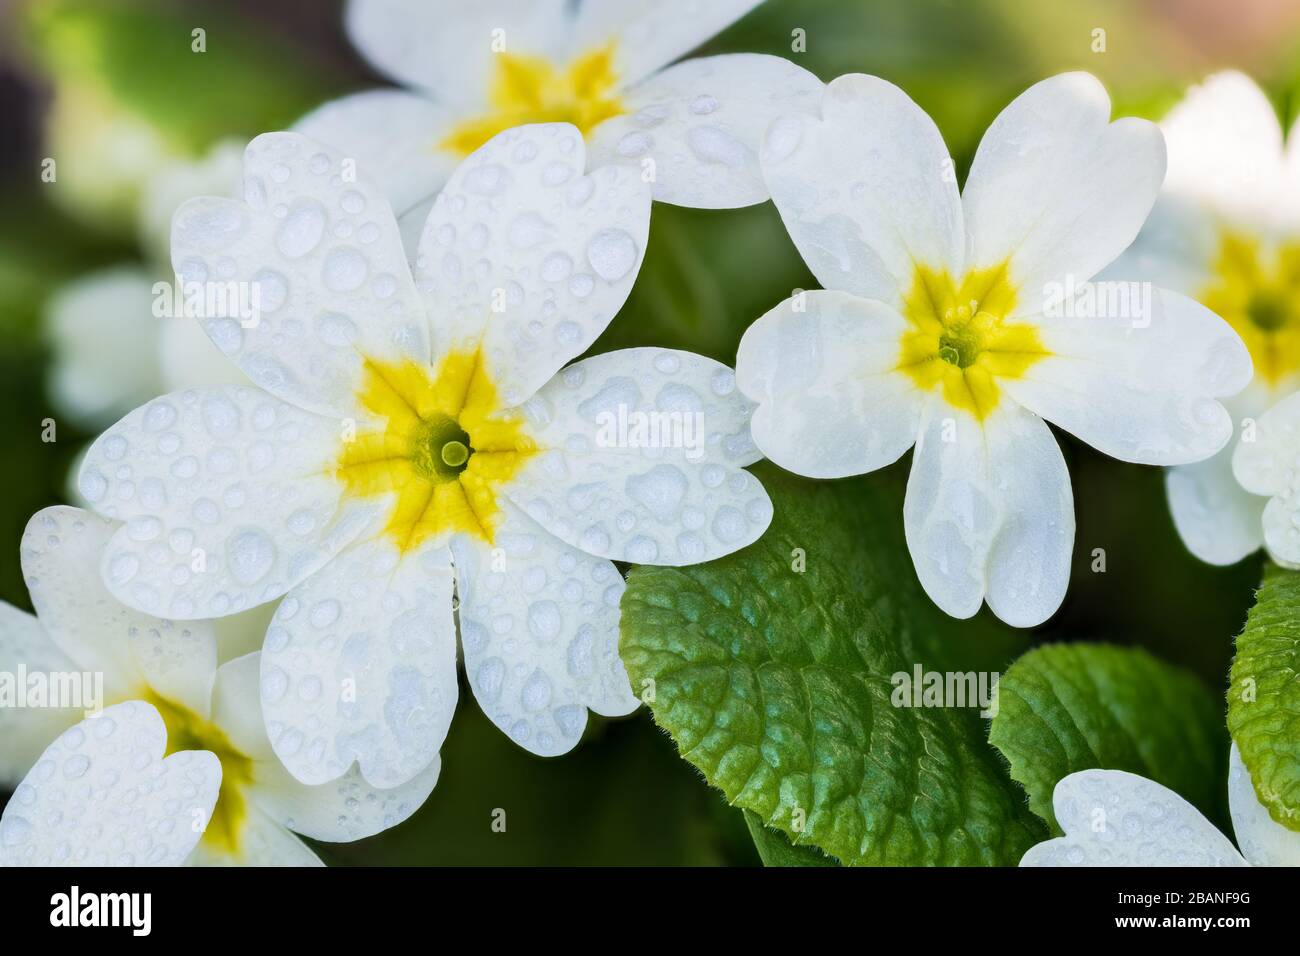 Nasse weiße Cowslip Primrosblüten gruppieren sich mit Wassertropfen, gelbem Kern und grünen Blättern. Primula veris. Blühende mehrjährige Kräuter. Regnerisches Wetter im Frühling. Stockfoto